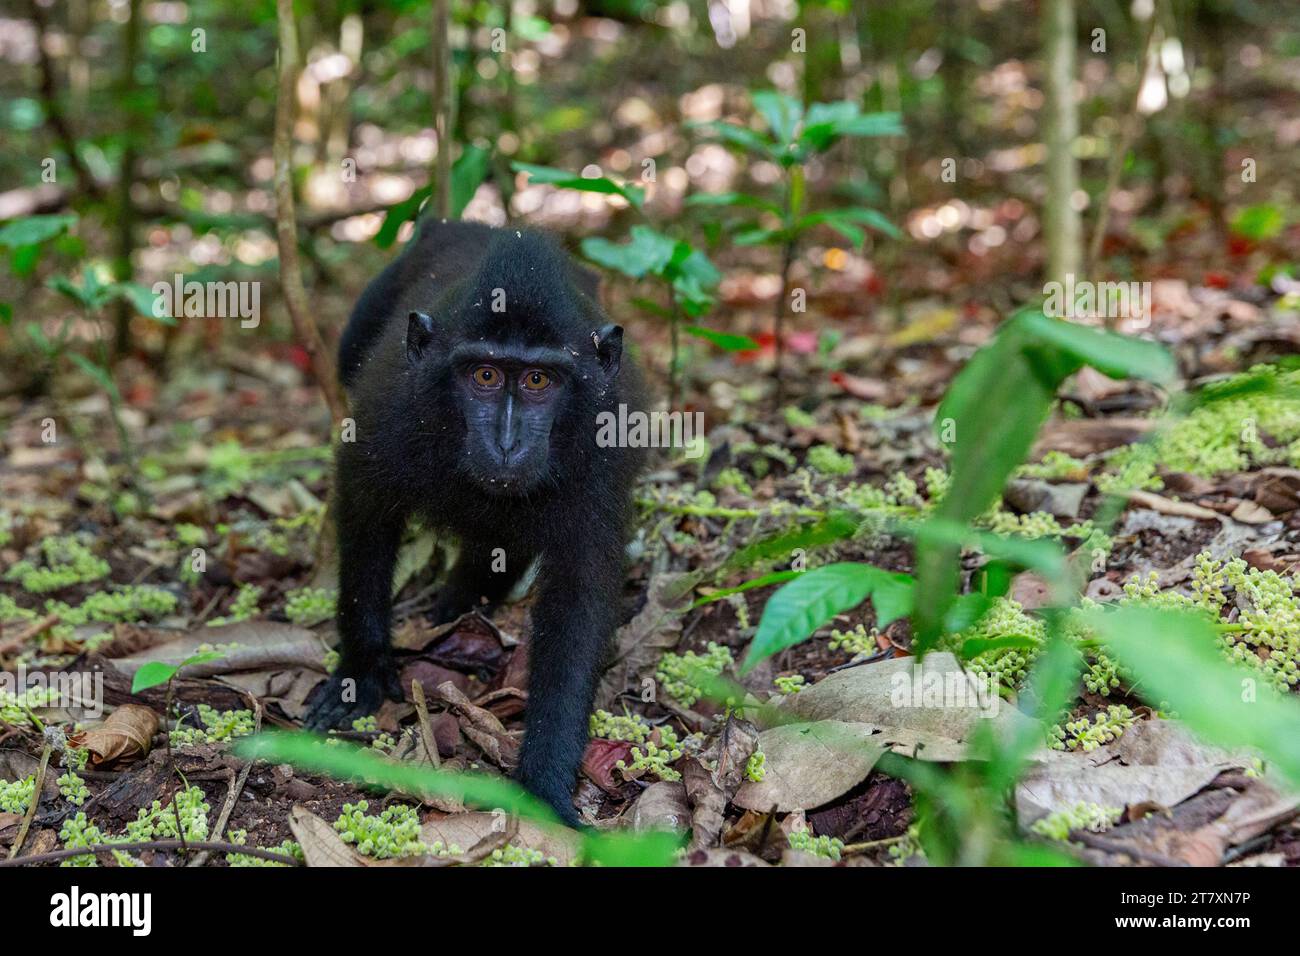 Jeune Célèbes macaque à crête (Macaca nigra), recherche de nourriture dans la réserve naturelle de Tangkoko Batuangus, Sulawesi, Indonésie, Asie du Sud-est, Asie Banque D'Images